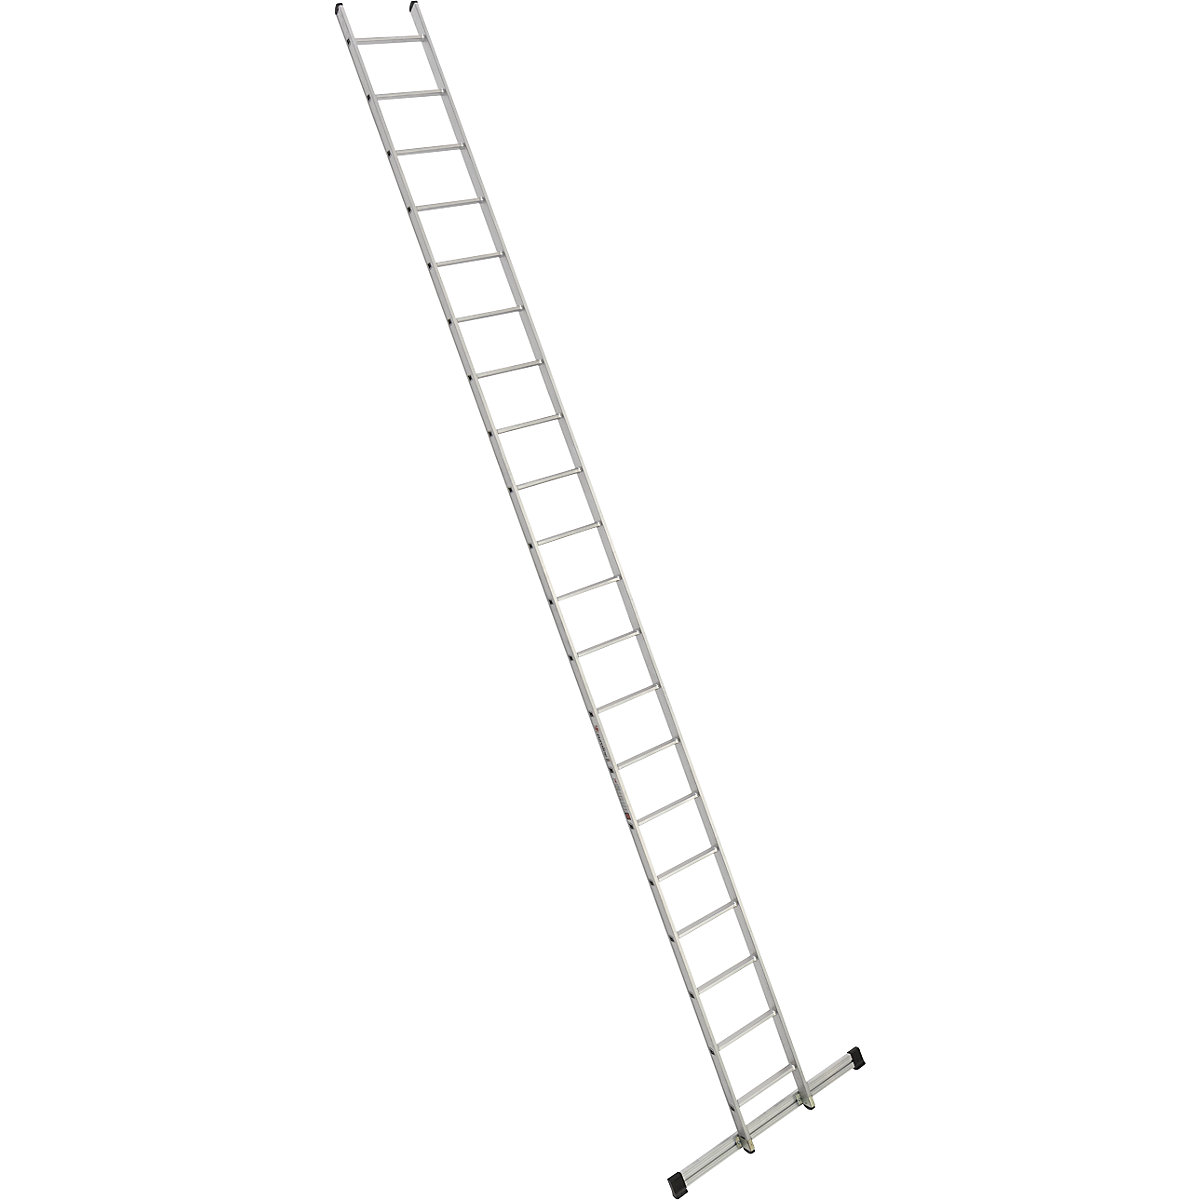 Príložný rebrík s priečkami – euroline, šírka 410 mm, 20 priečok s priečnikom-11